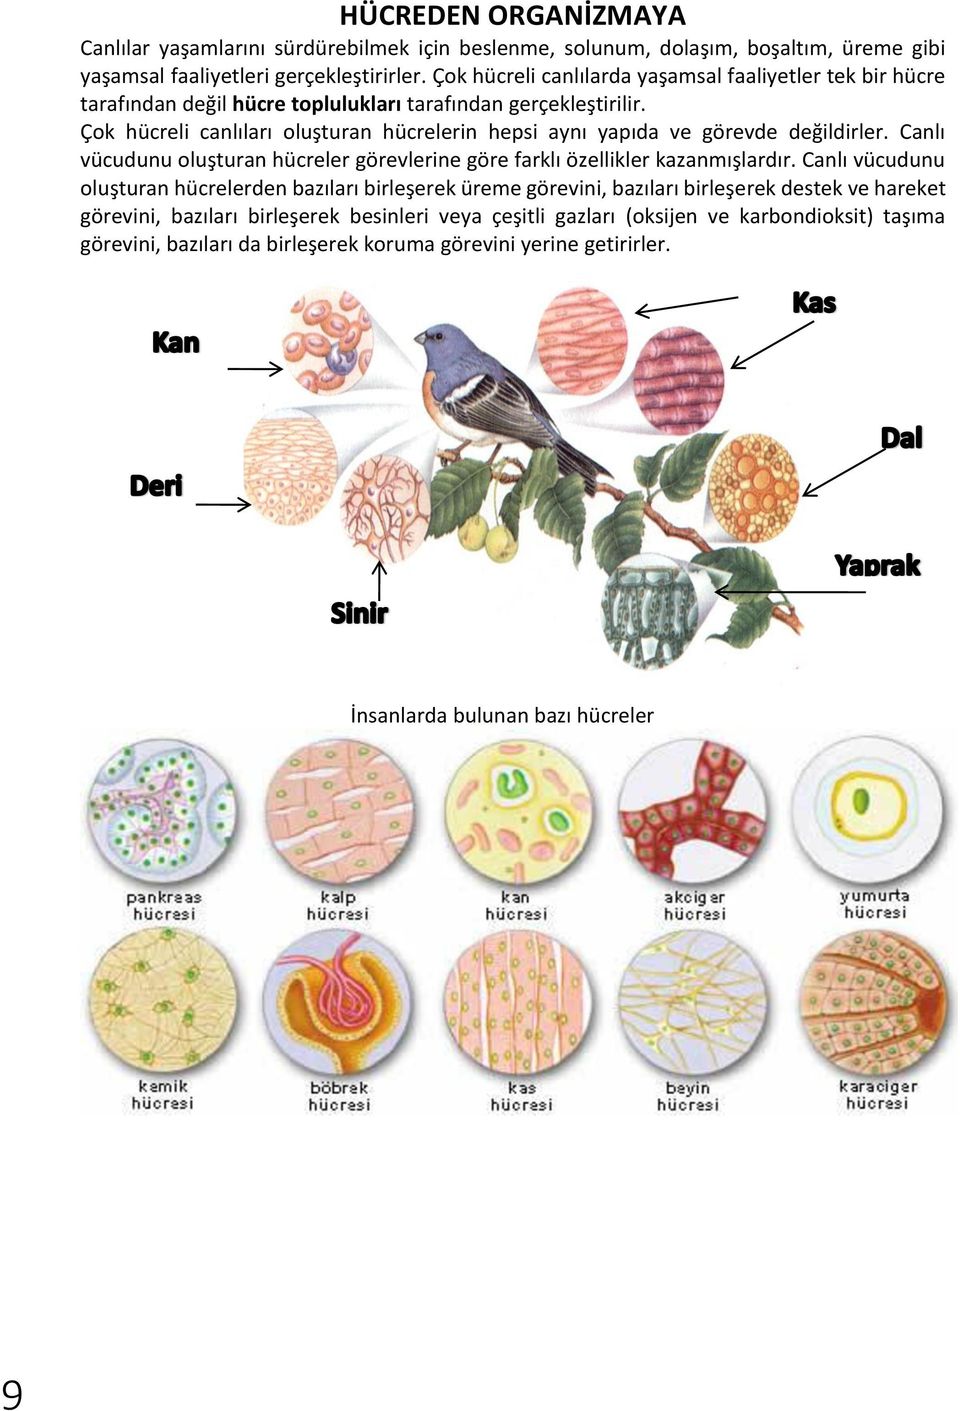 Çok hücreli canlıları oluşturan hücrelerin hepsi aynı yapıda ve görevde değildirler. Canlı vücudunu oluşturan hücreler görevlerine göre farklı özellikler kazanmışlardır.